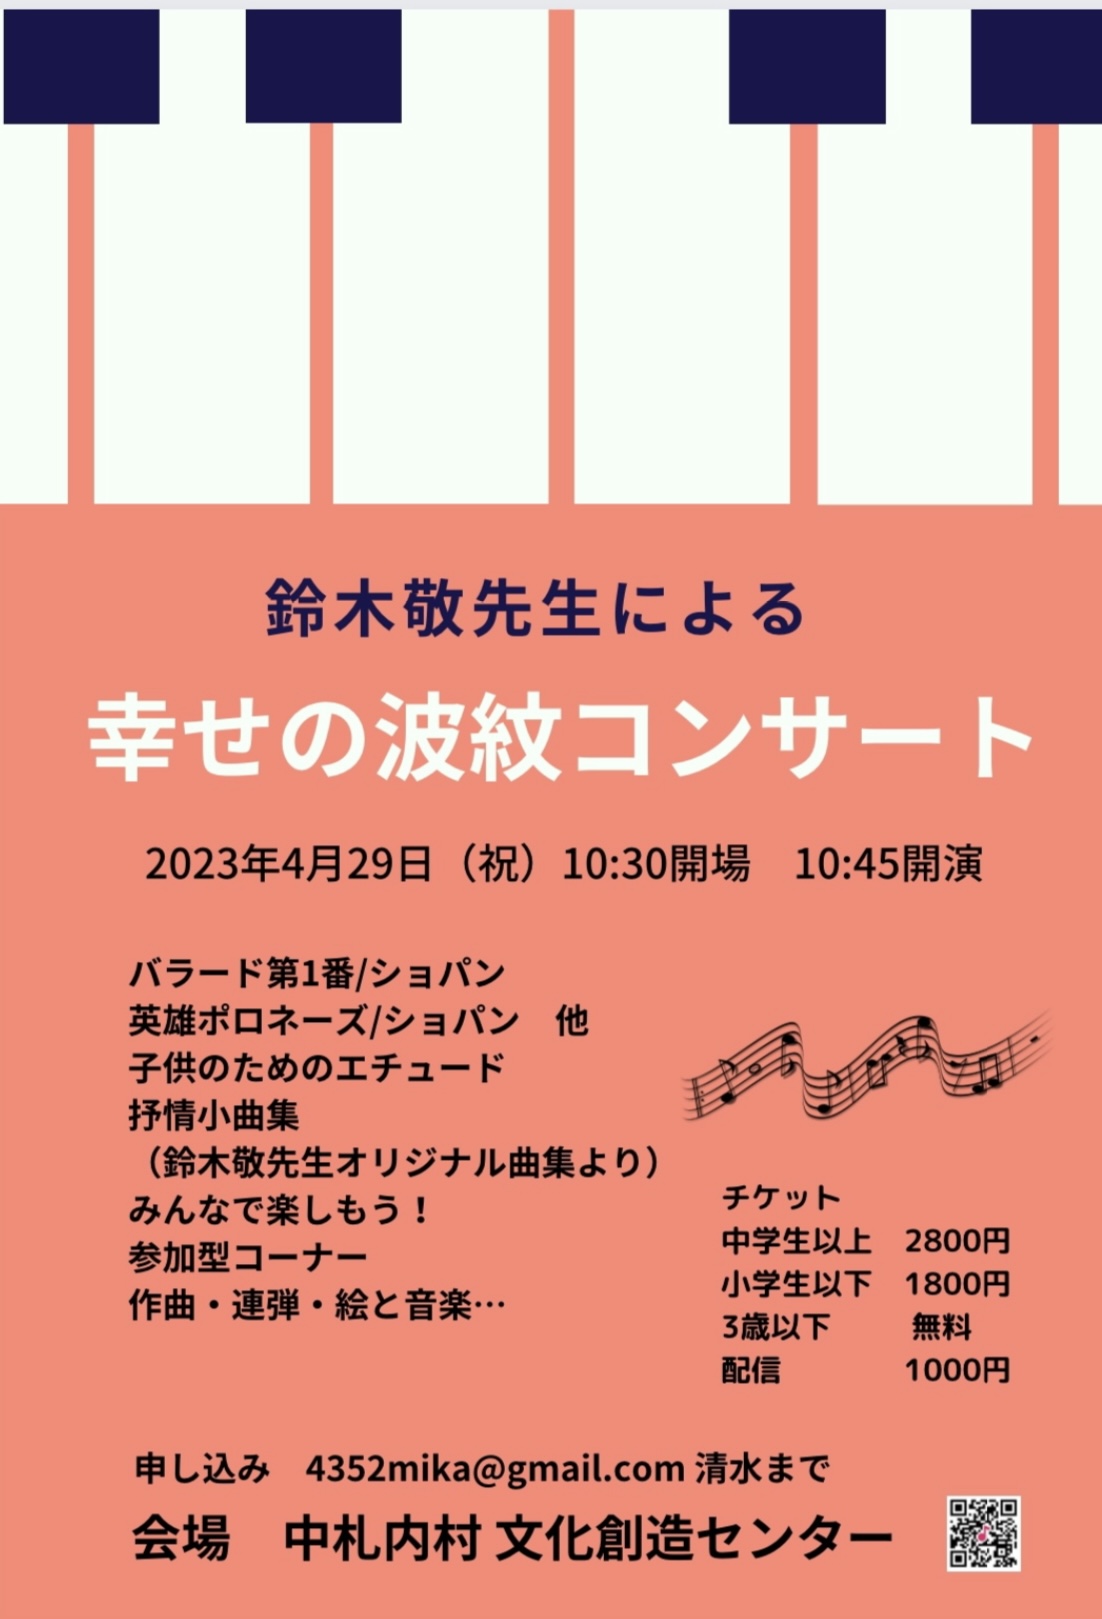 「幸せの波紋コンサート」in北海道 開催します♪